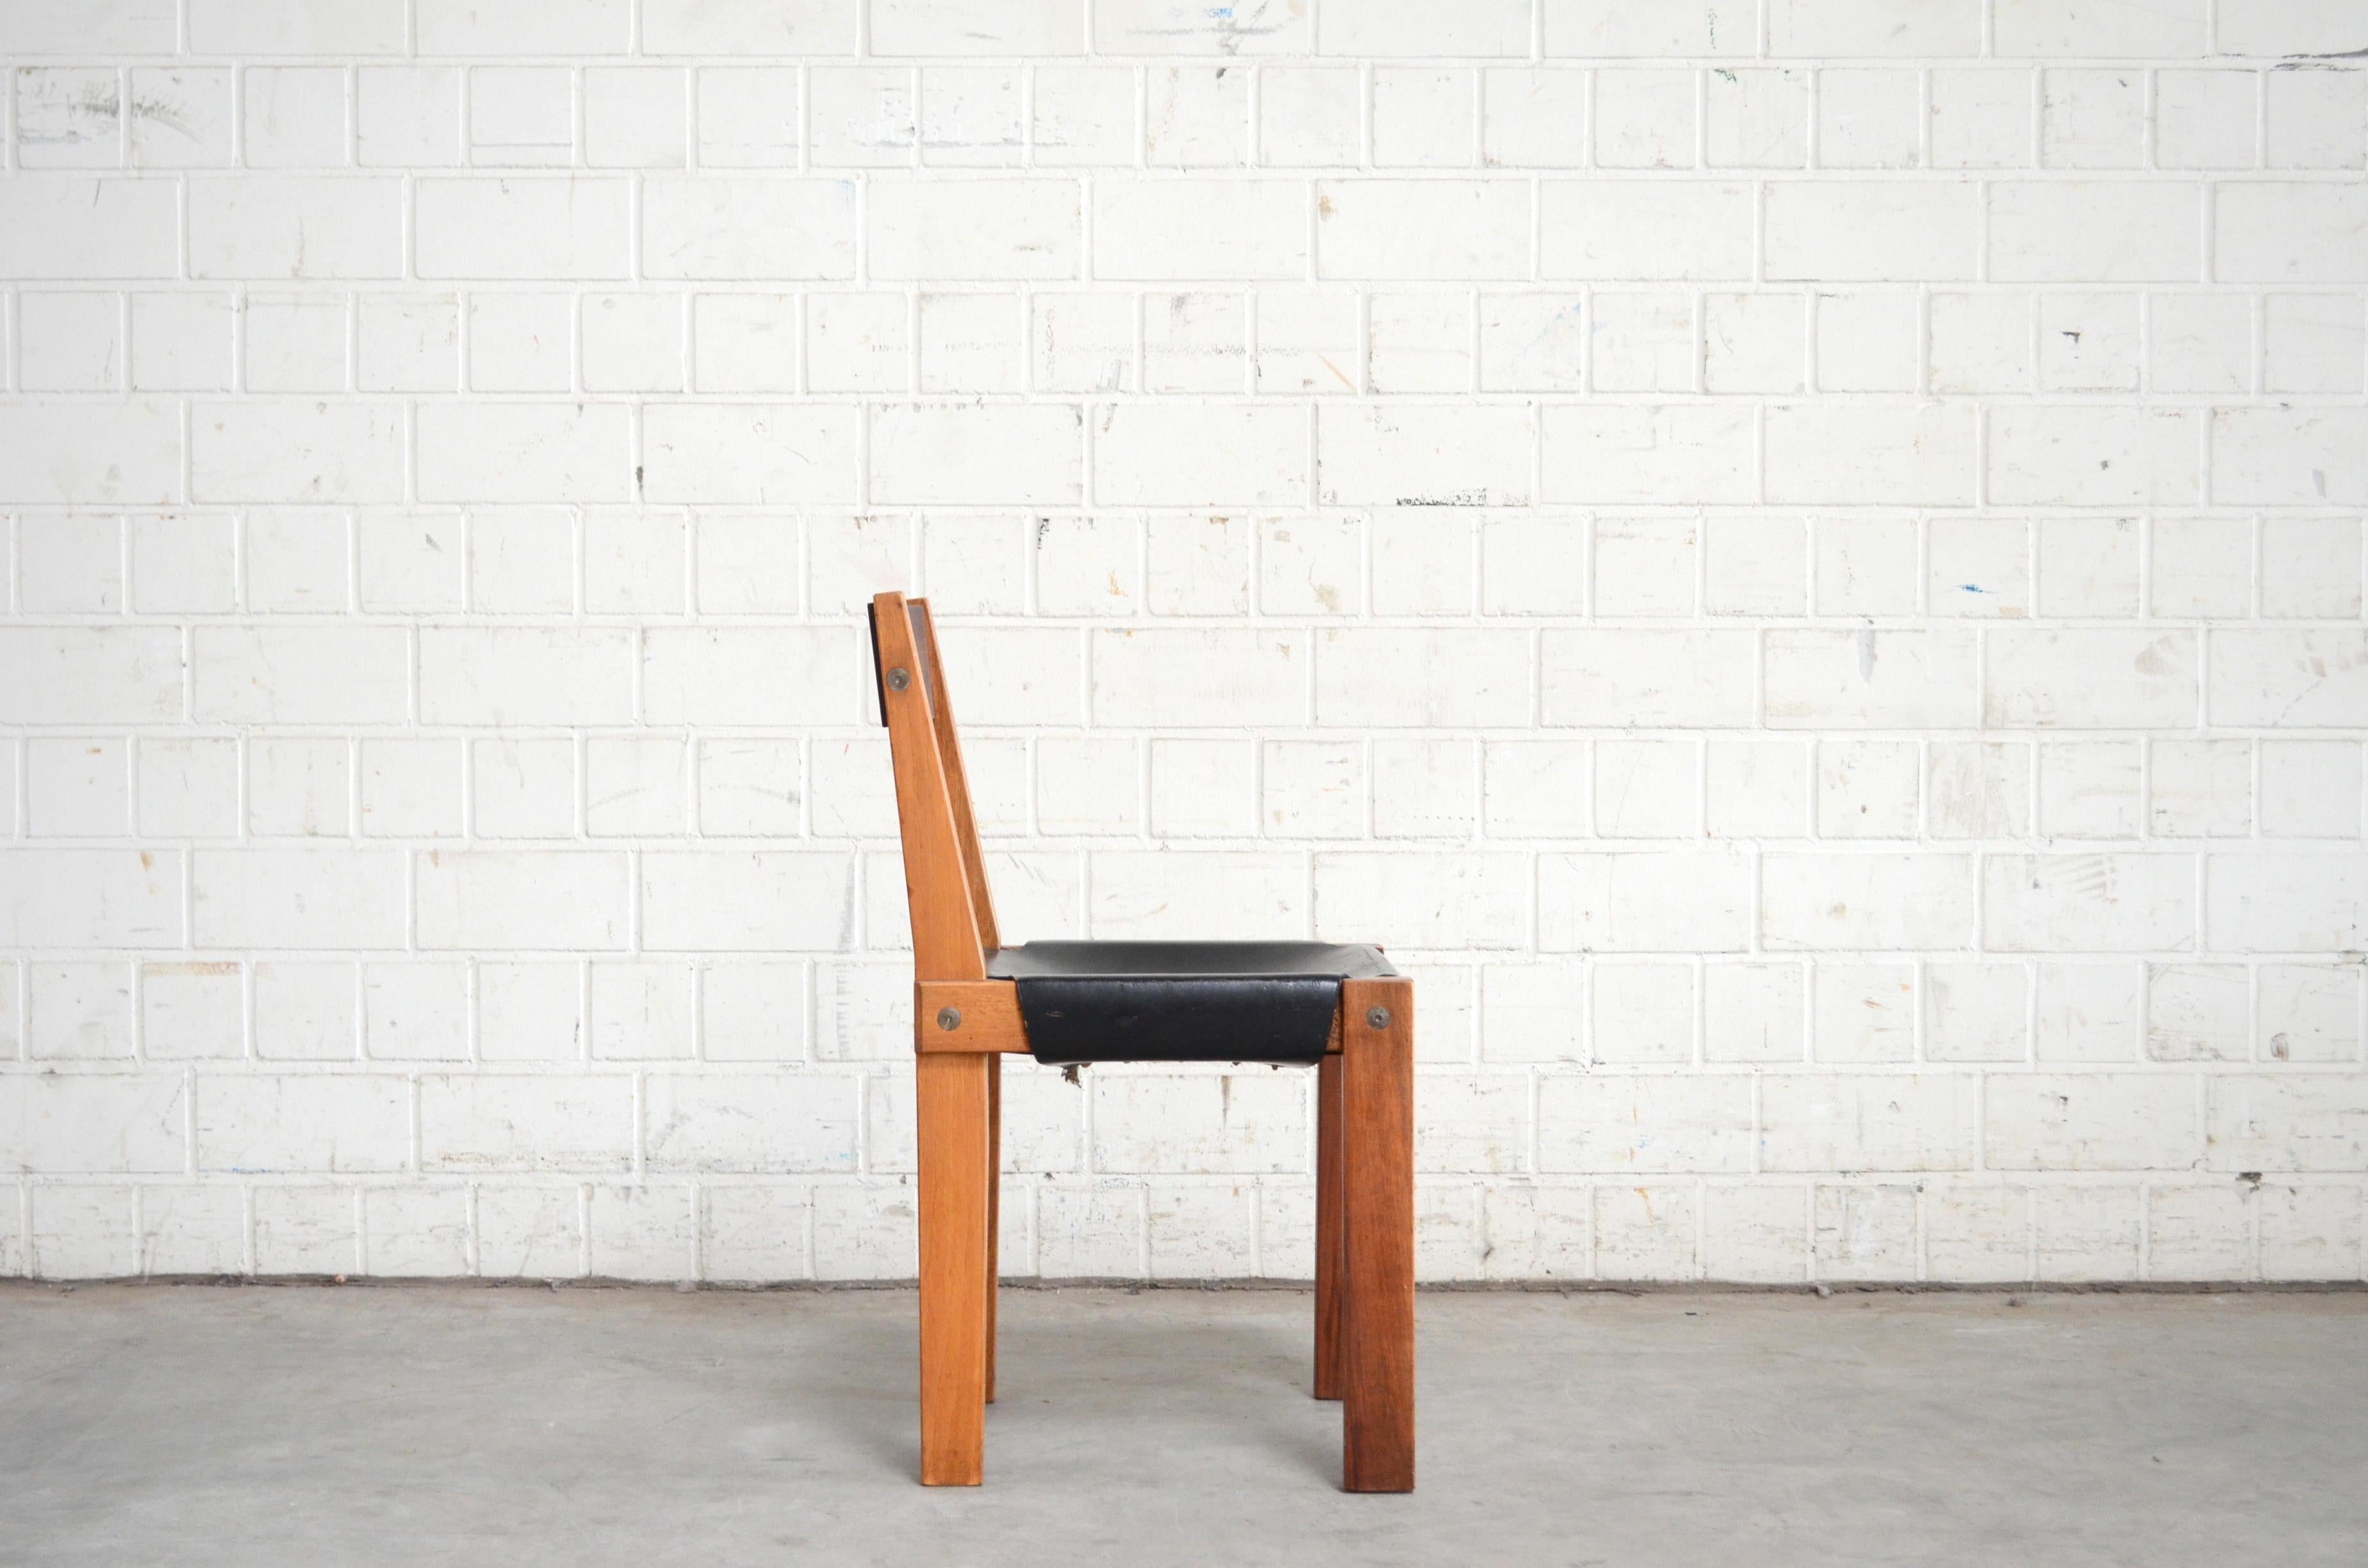 Le modèle  La chaise de salle à manger S 24 Pierre Chapo est un chef-d'œuvre.
Pierre Chapo a conçu cette chaise en 1967 pour son ami le Dr Hiroshi Nakajima.
Fabriqué en bois d'orme huilé et en cuir de selle noir.
Cette chaise est une version